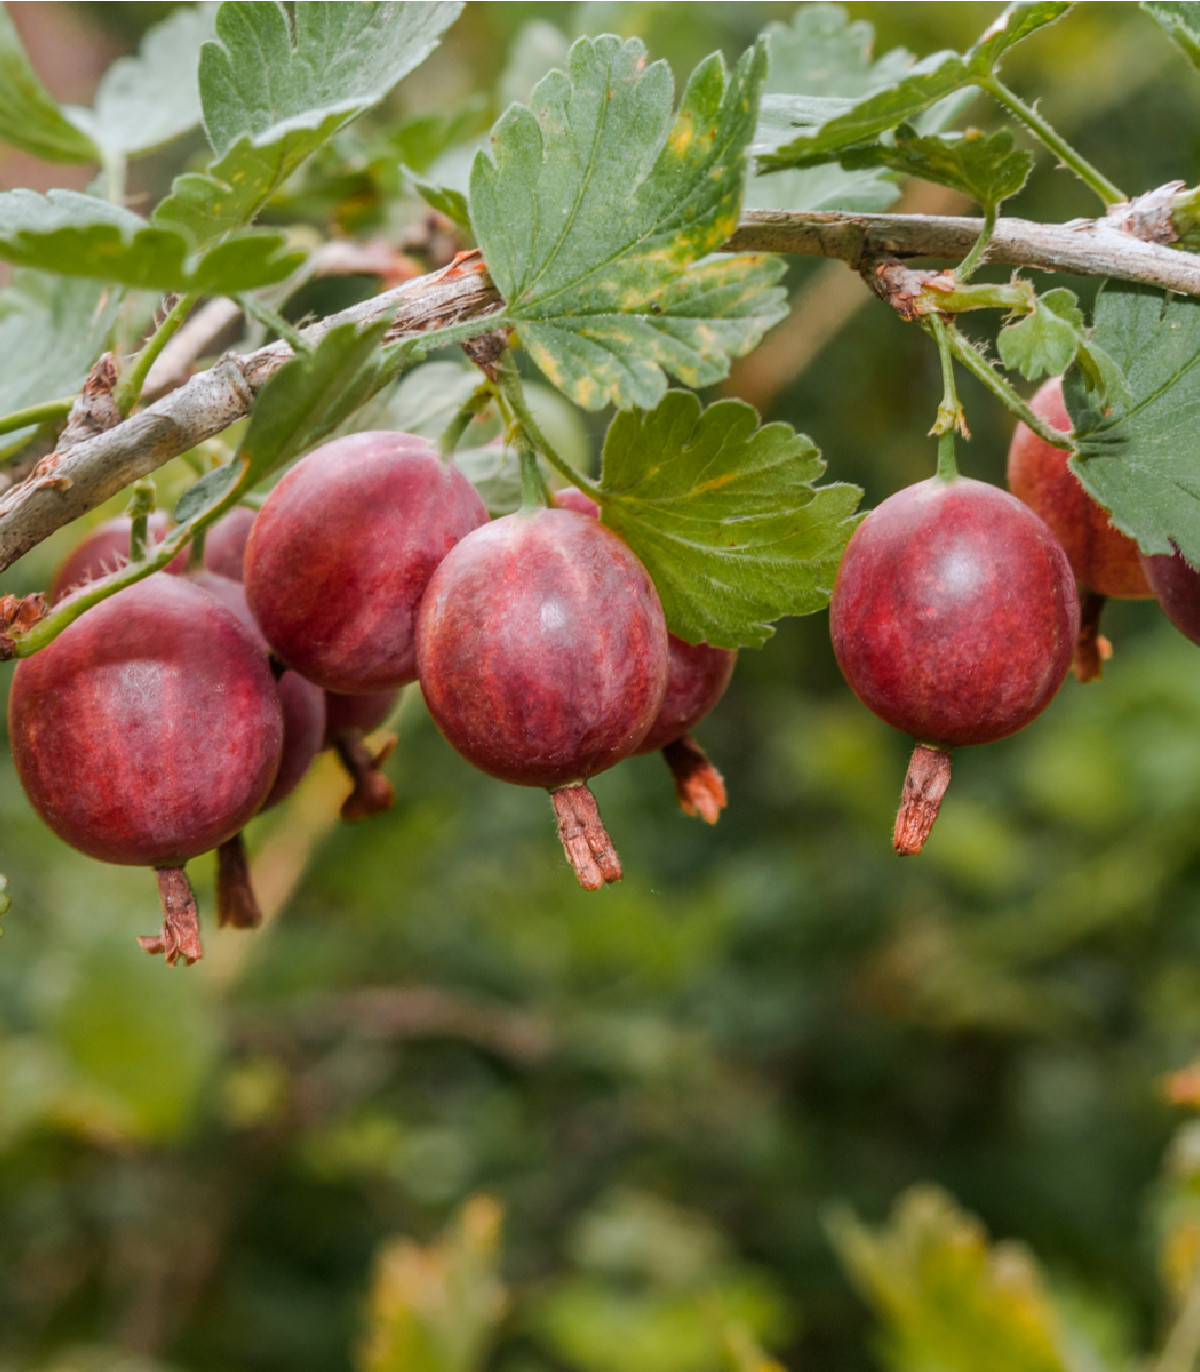 Angrešt červený - Ribes uva-crispa - prostokořenná sazenice angreštu - 1 ks